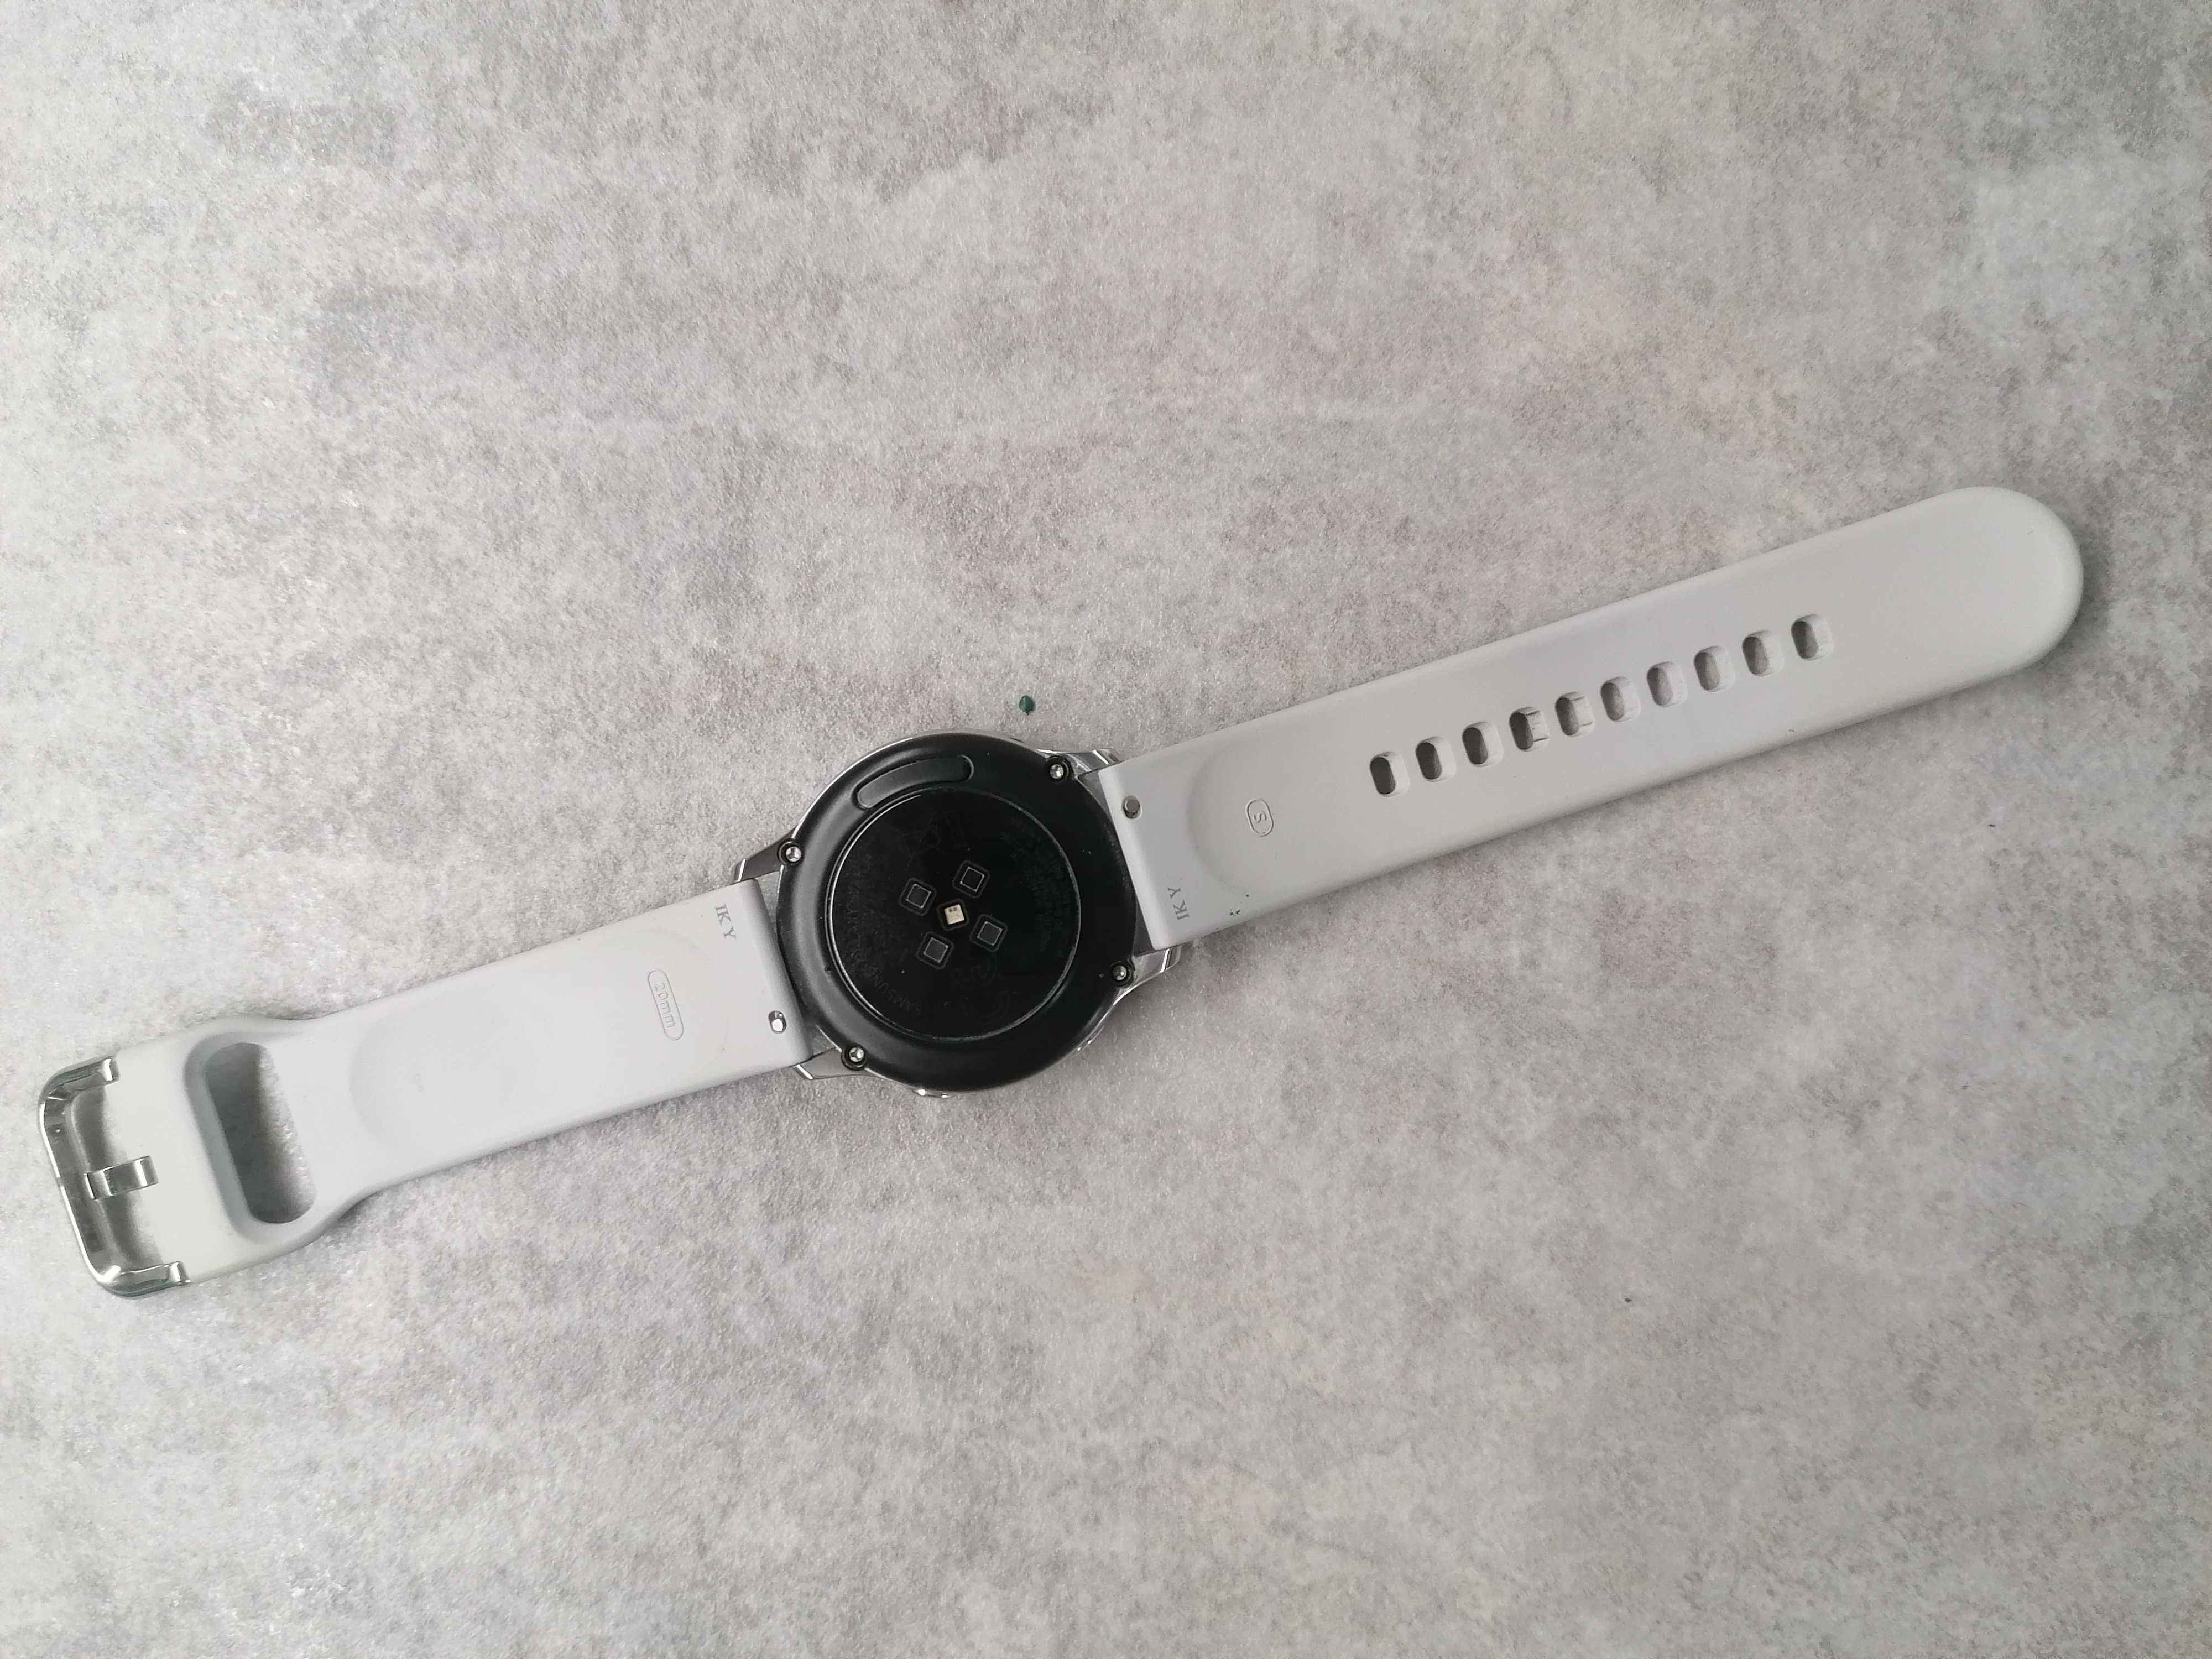 Smartwatch Samsung Galaxy Watch Active